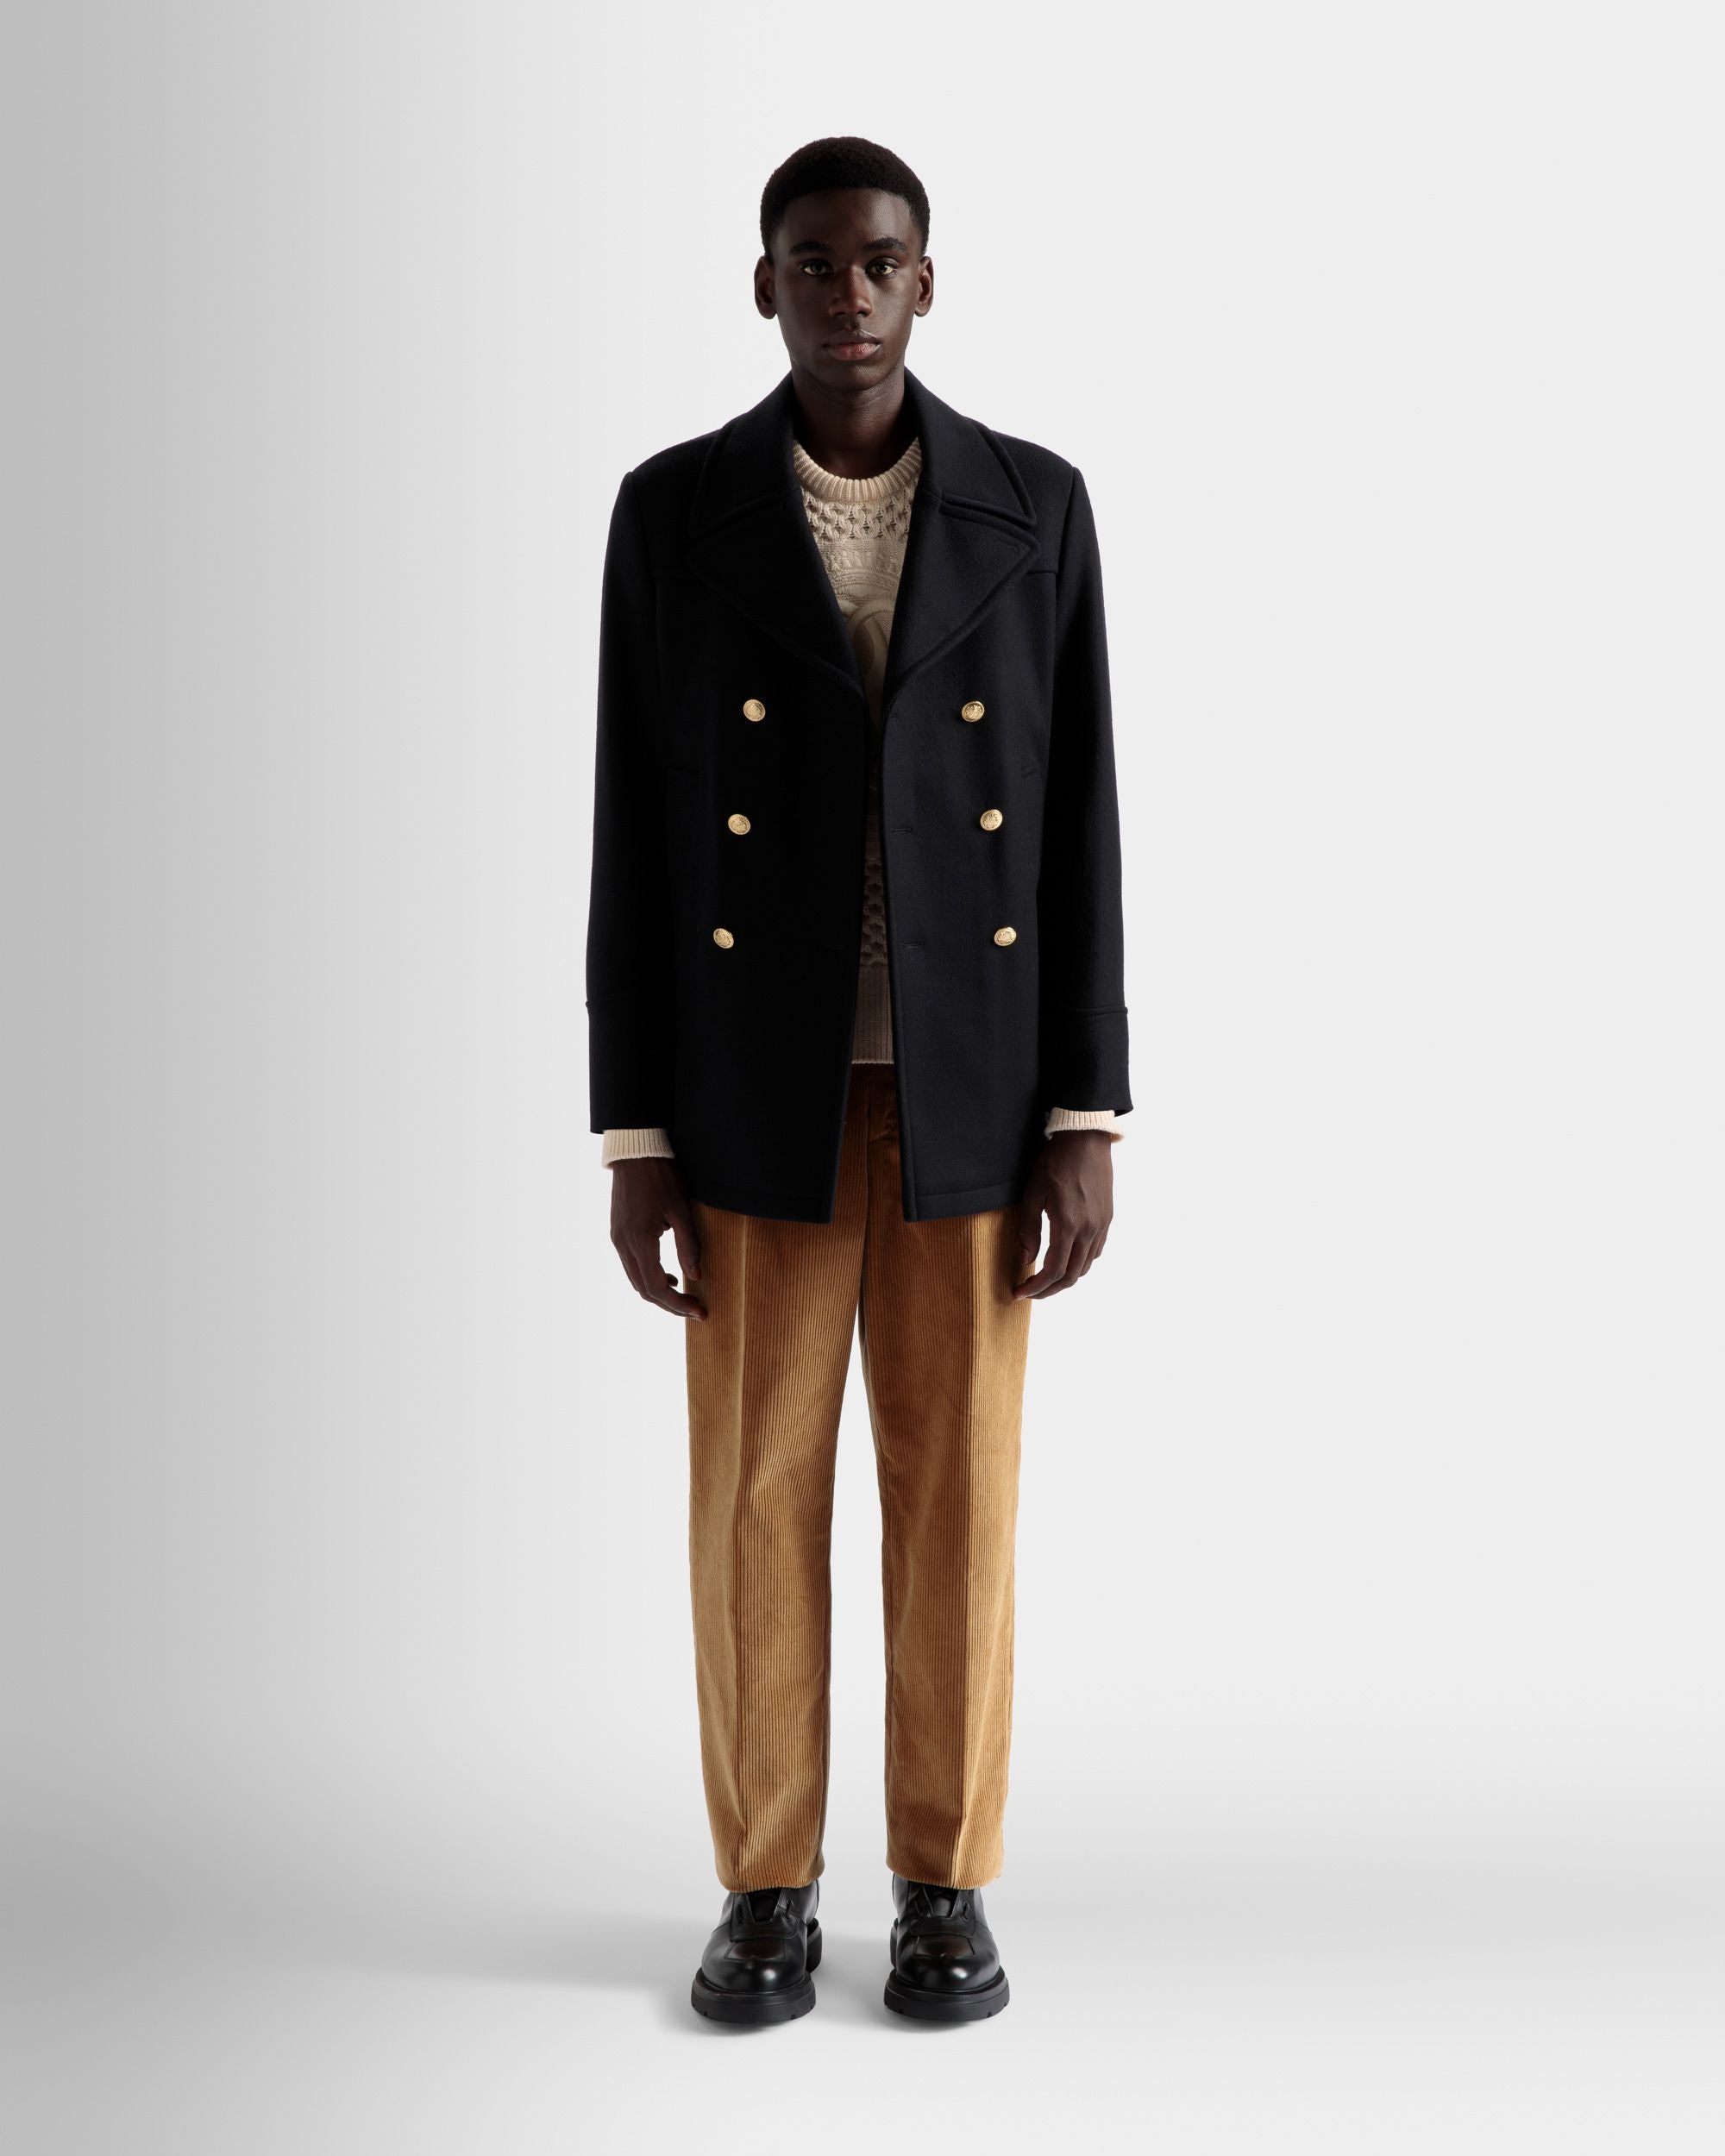 Zweireihiger Mantel | Jacken und Mäntel für Herren | Marineblaues Wollgemisch | Bally | Model getragen Vorderseite